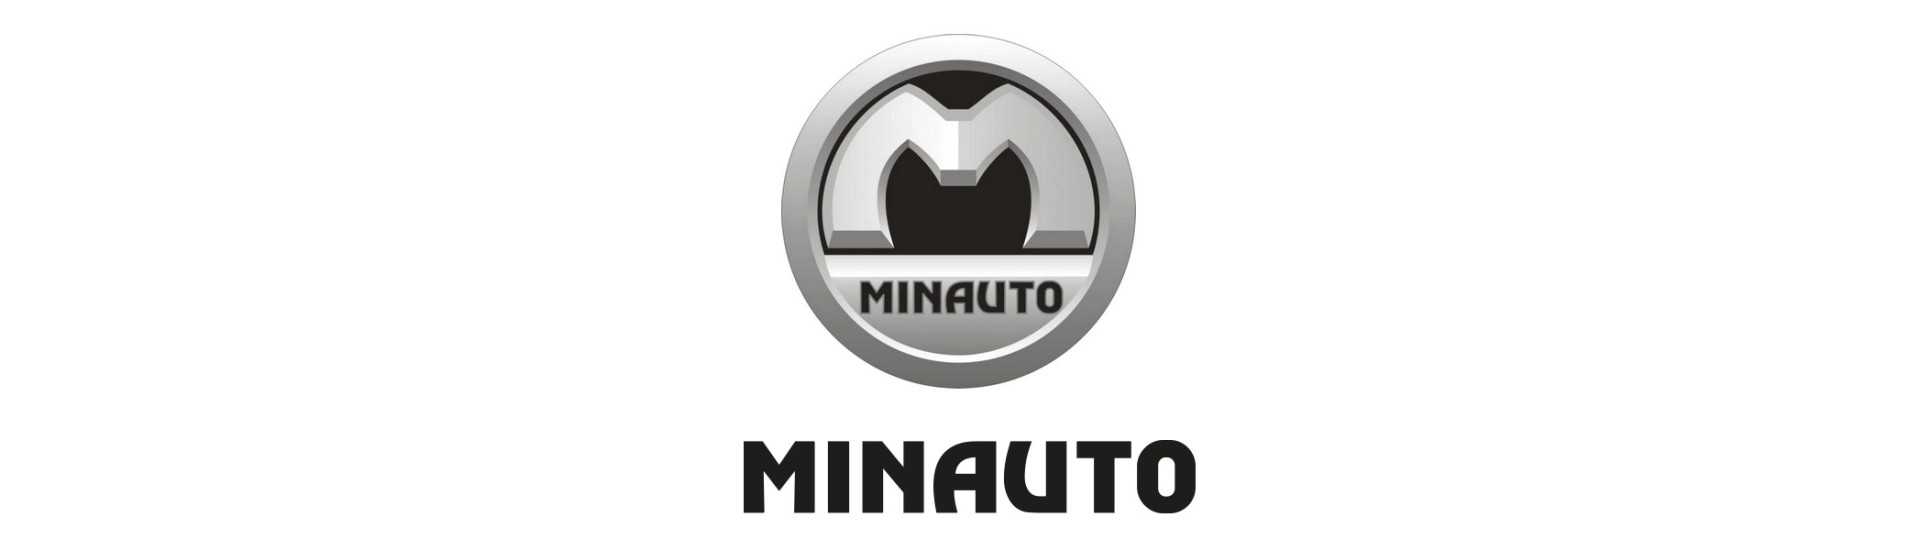 Kroppsarbete till bästa pris för bil utan tillstånd Minauto